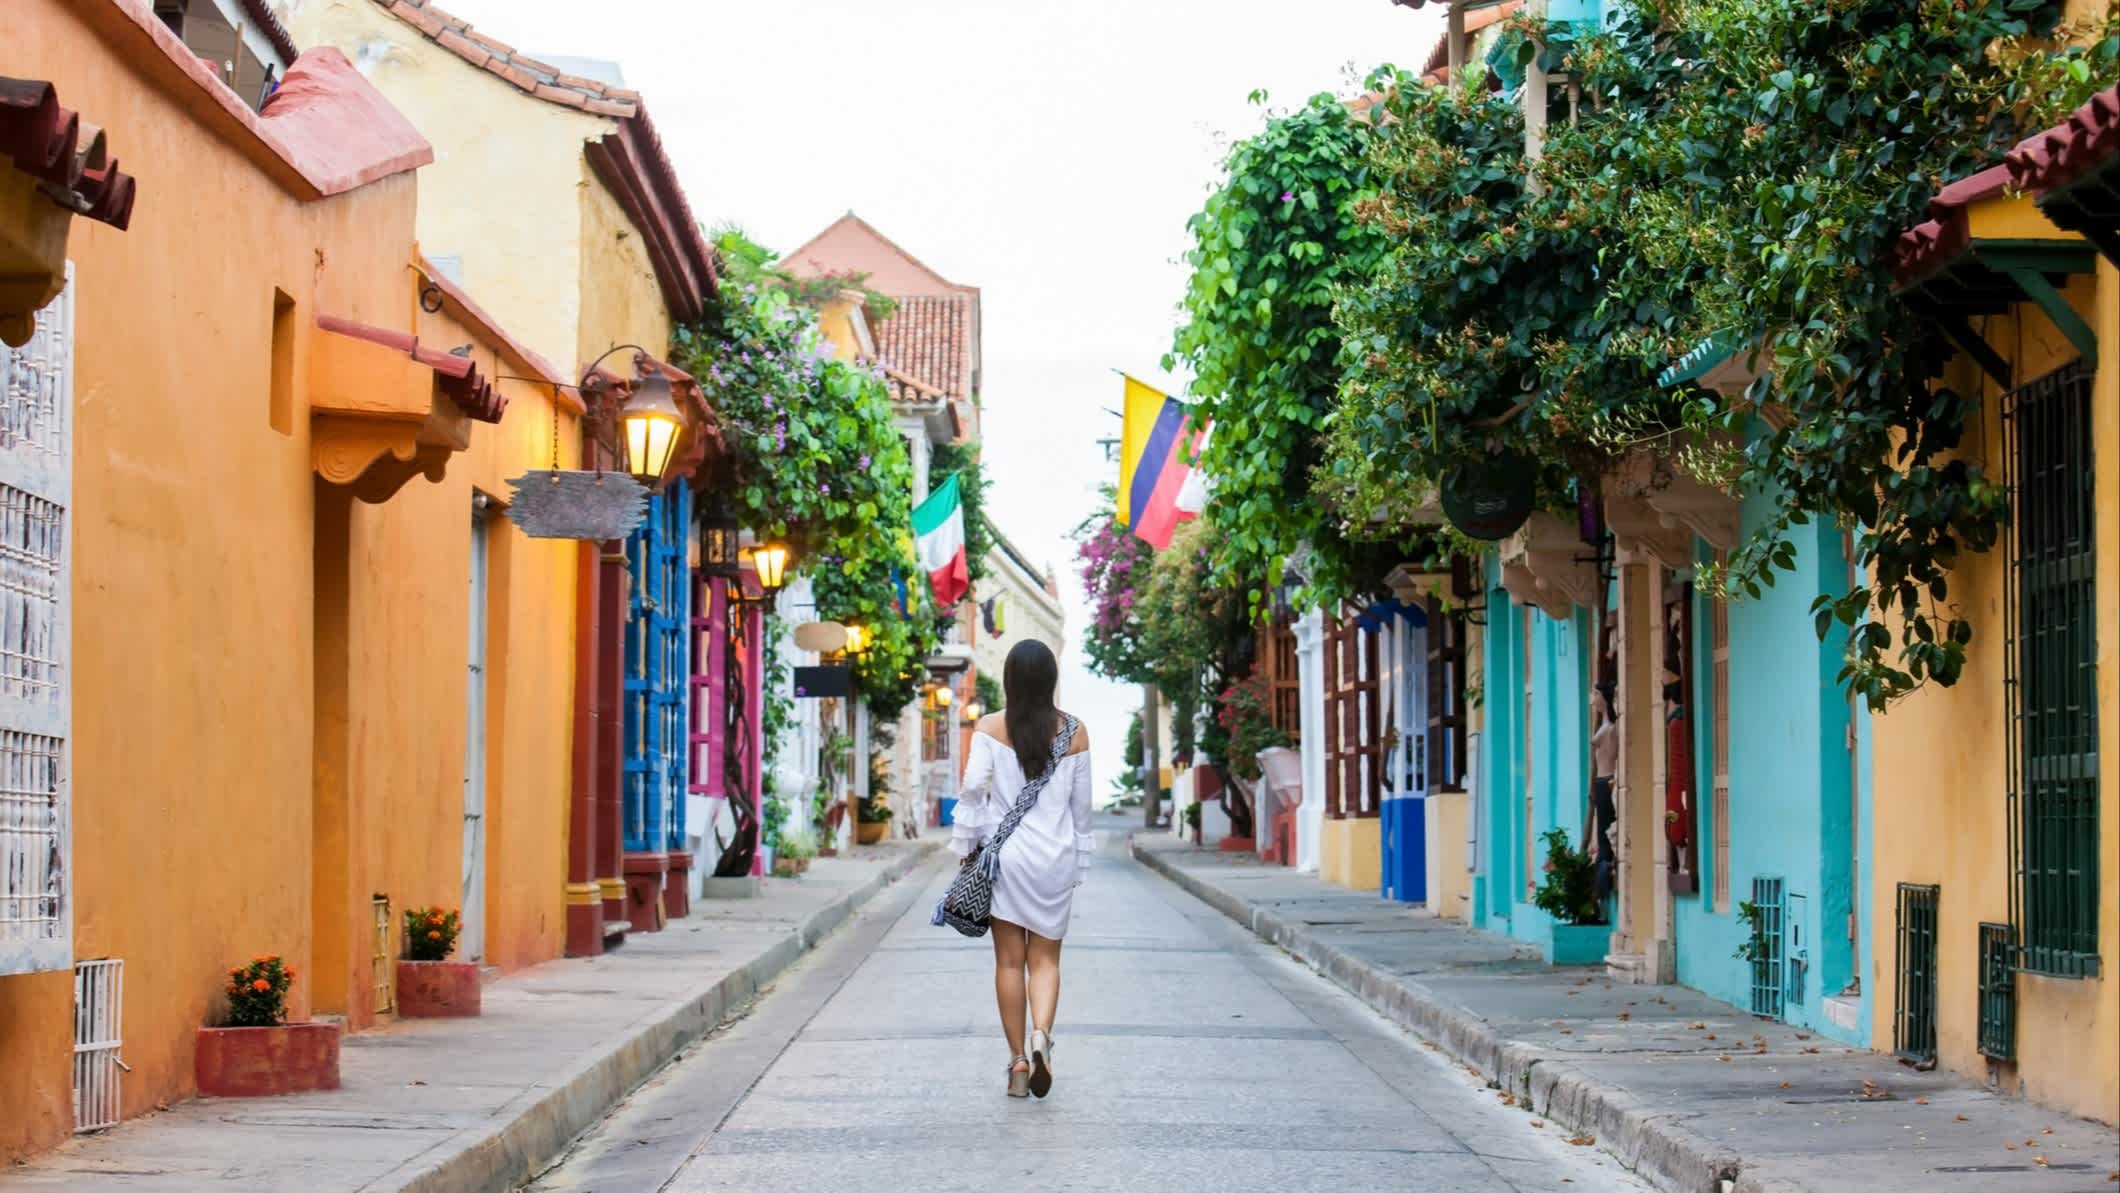  Femme marchant dans une rue colorée de la ville coloniale fortifiée de Carthagène, en Colombie